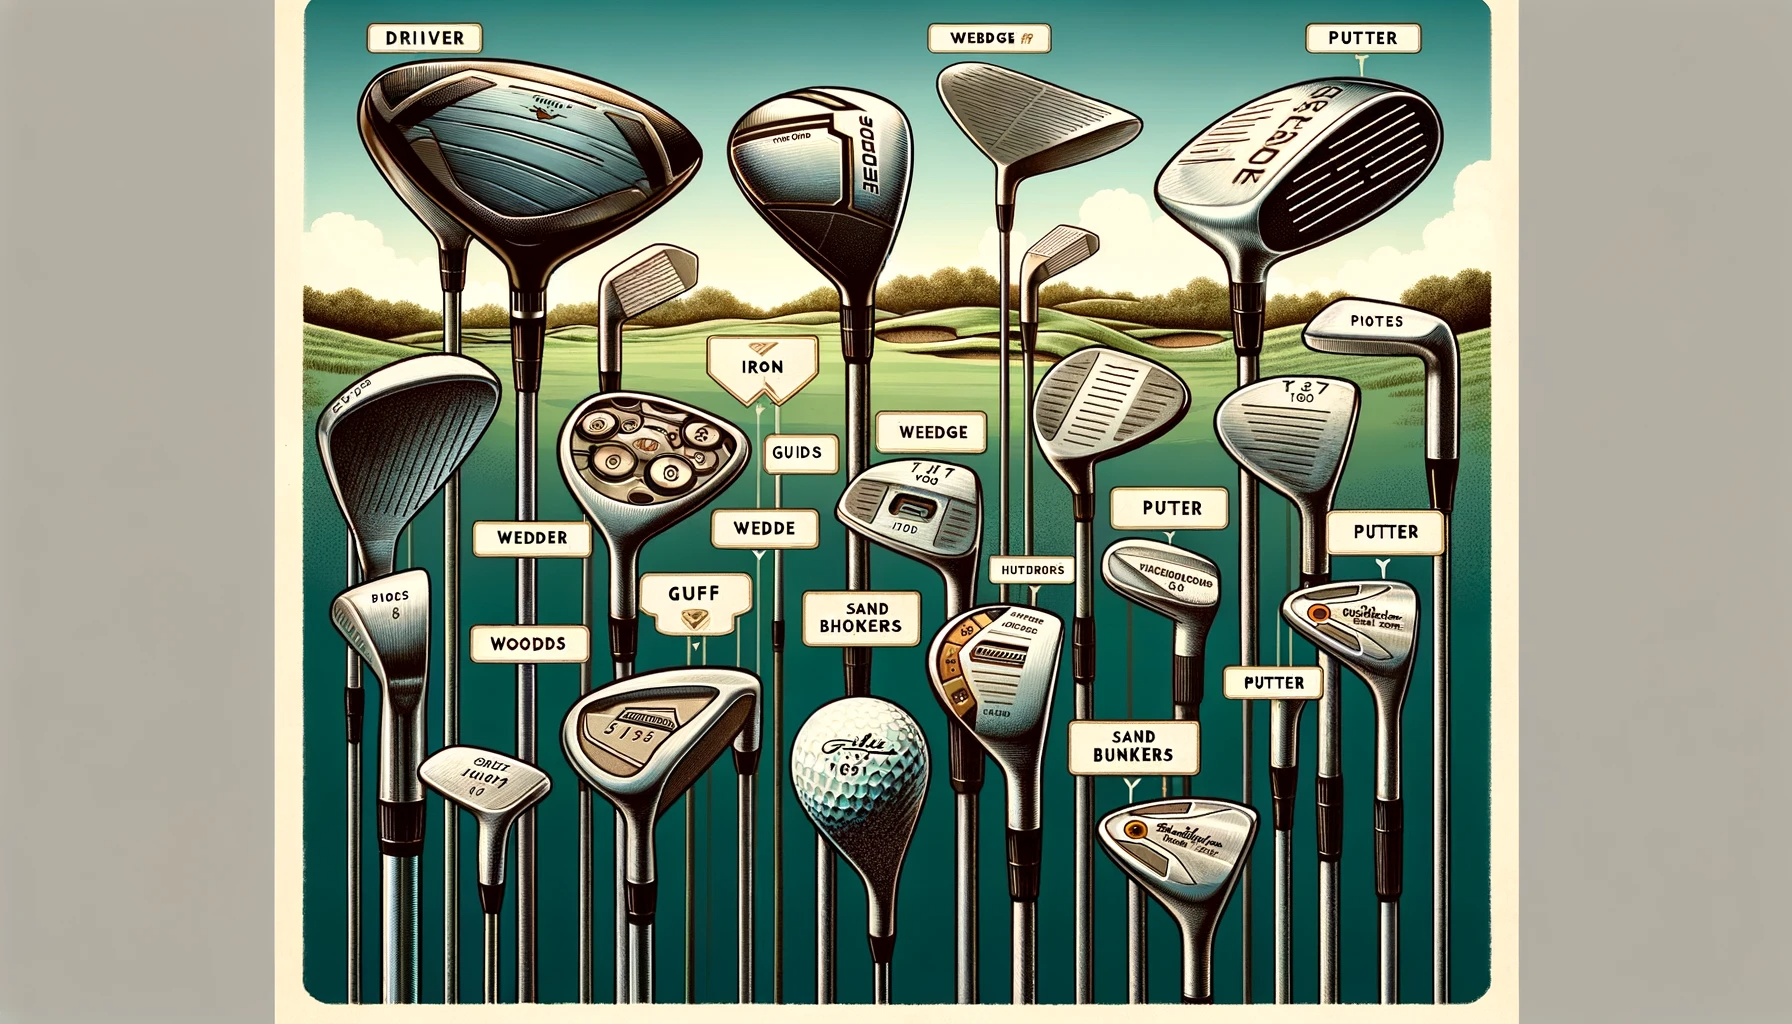 골프 클럽의 종류와 용도 이해하기